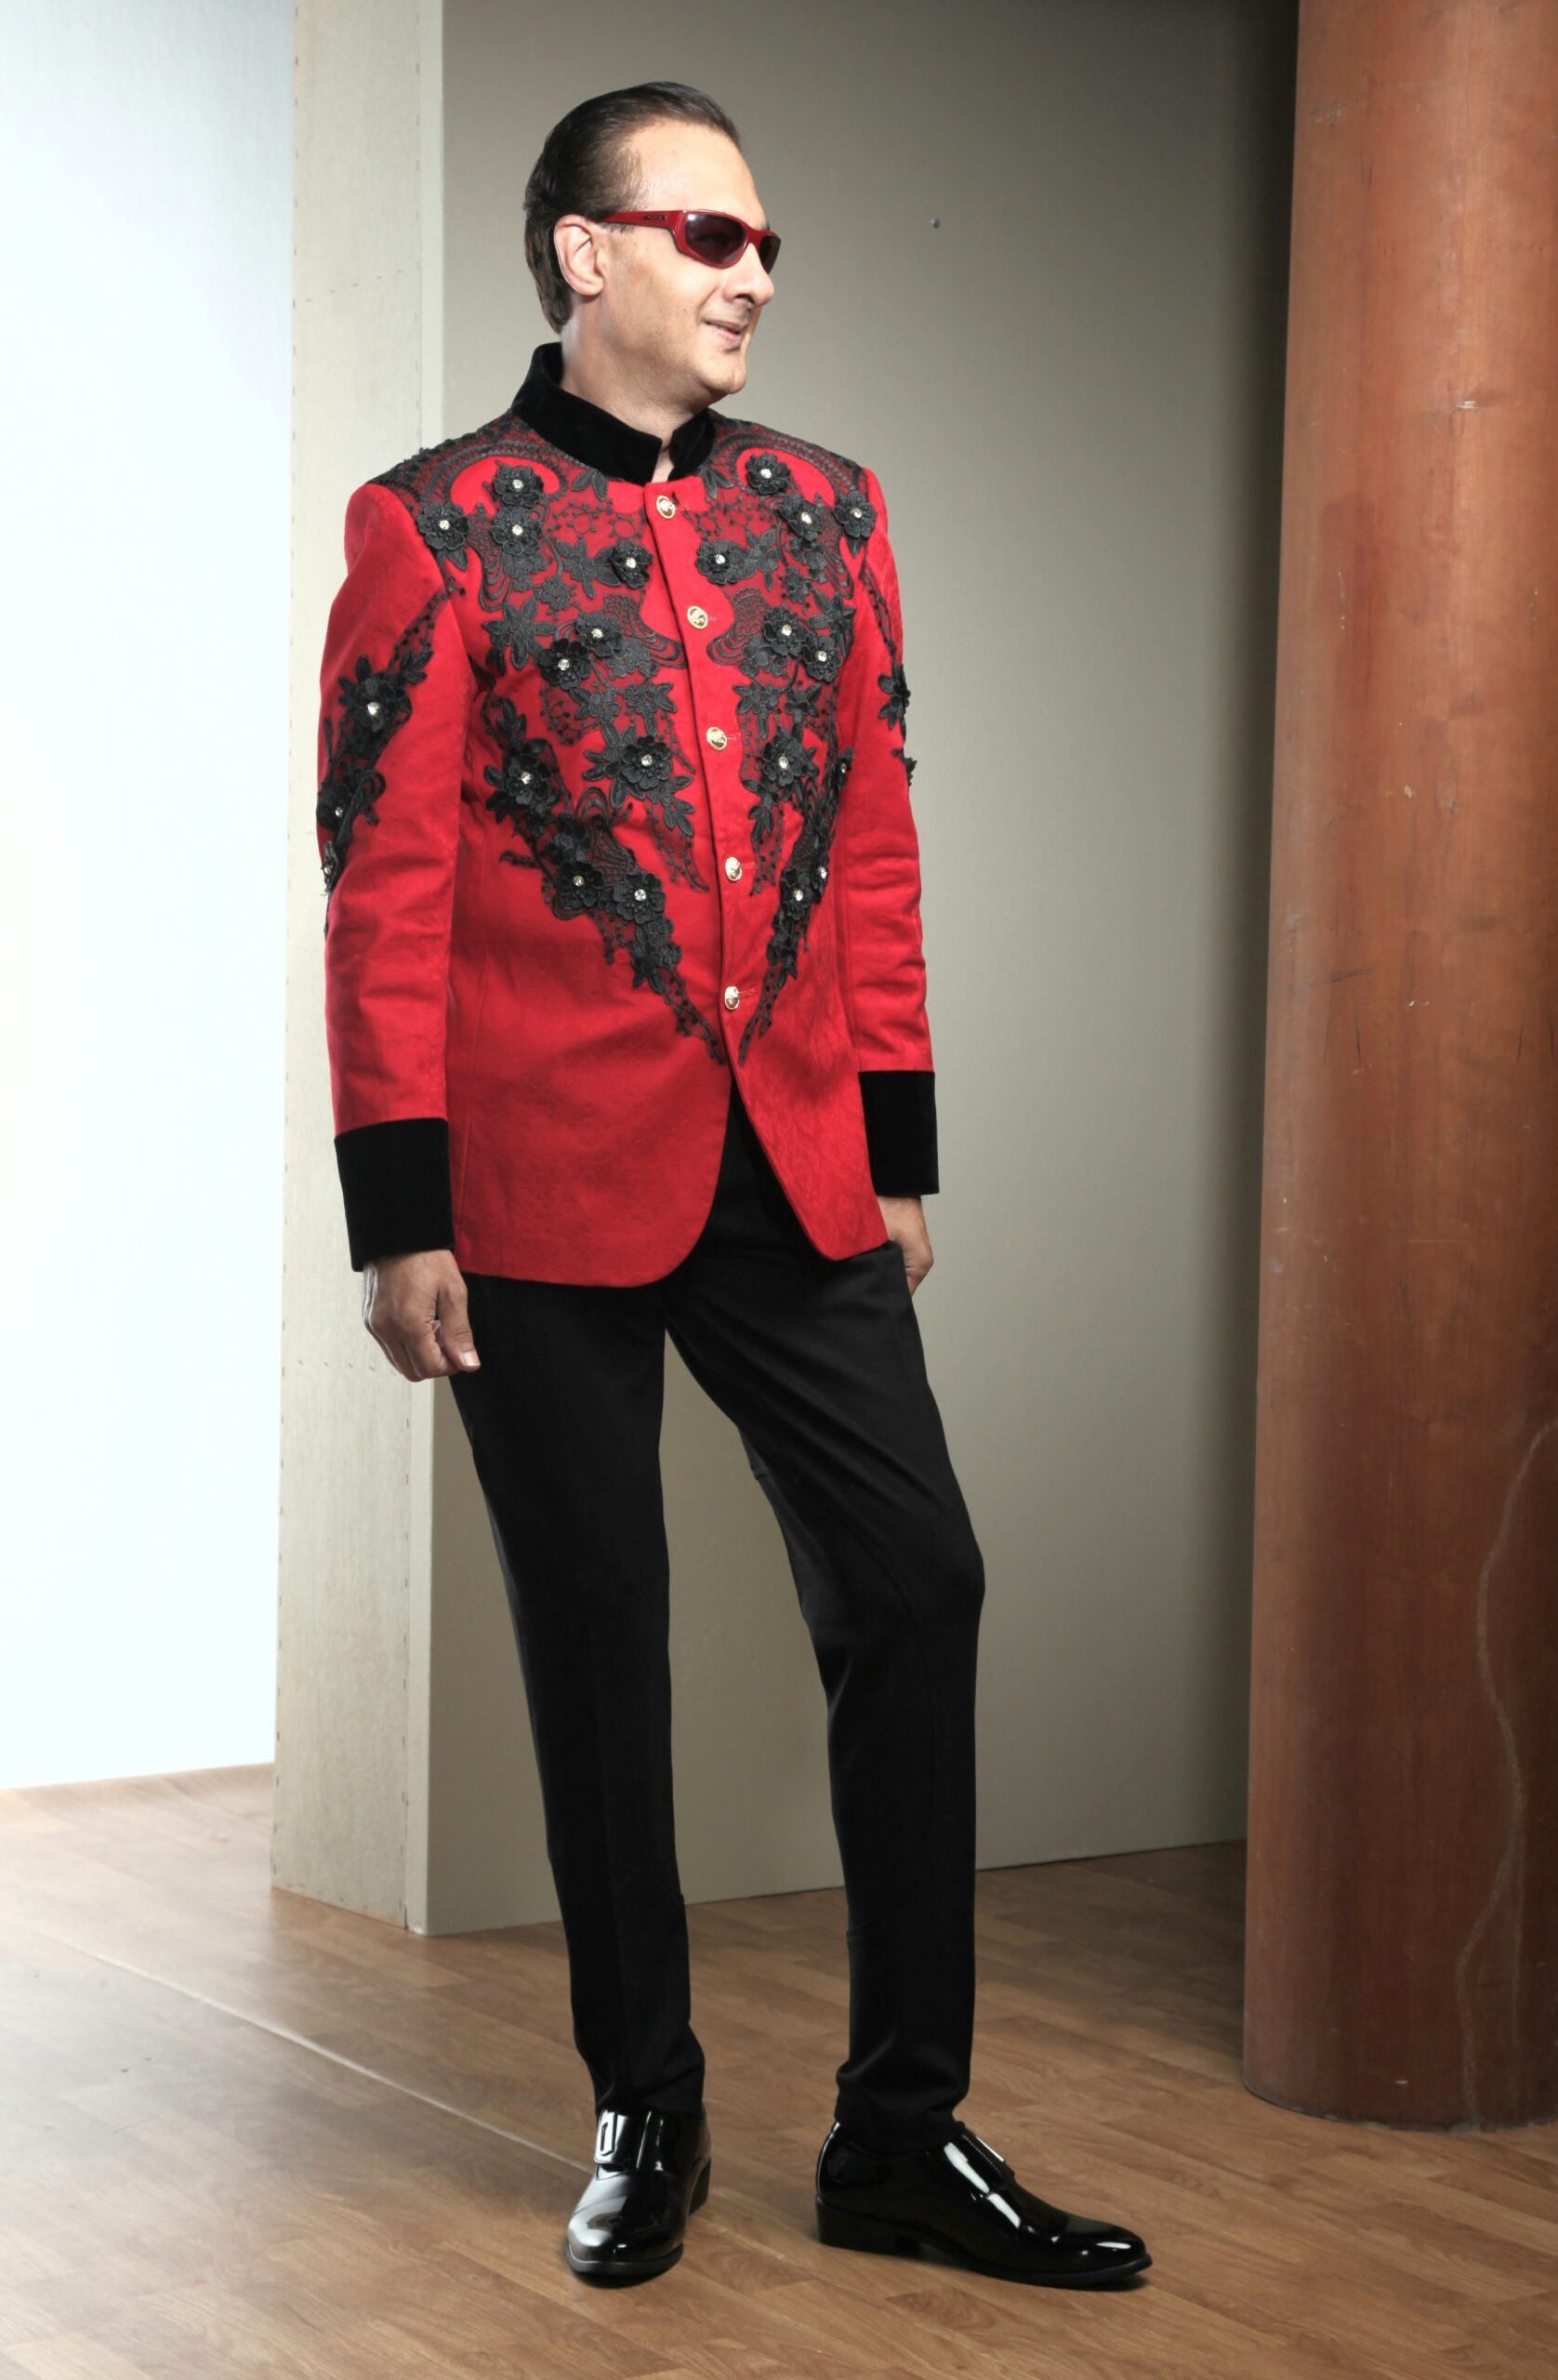 MST-5052-03-rent_rental_hire_tuxedo_suit_black_tie_suit_designer_suits_shop_tailor_tailors_singapore_wedding